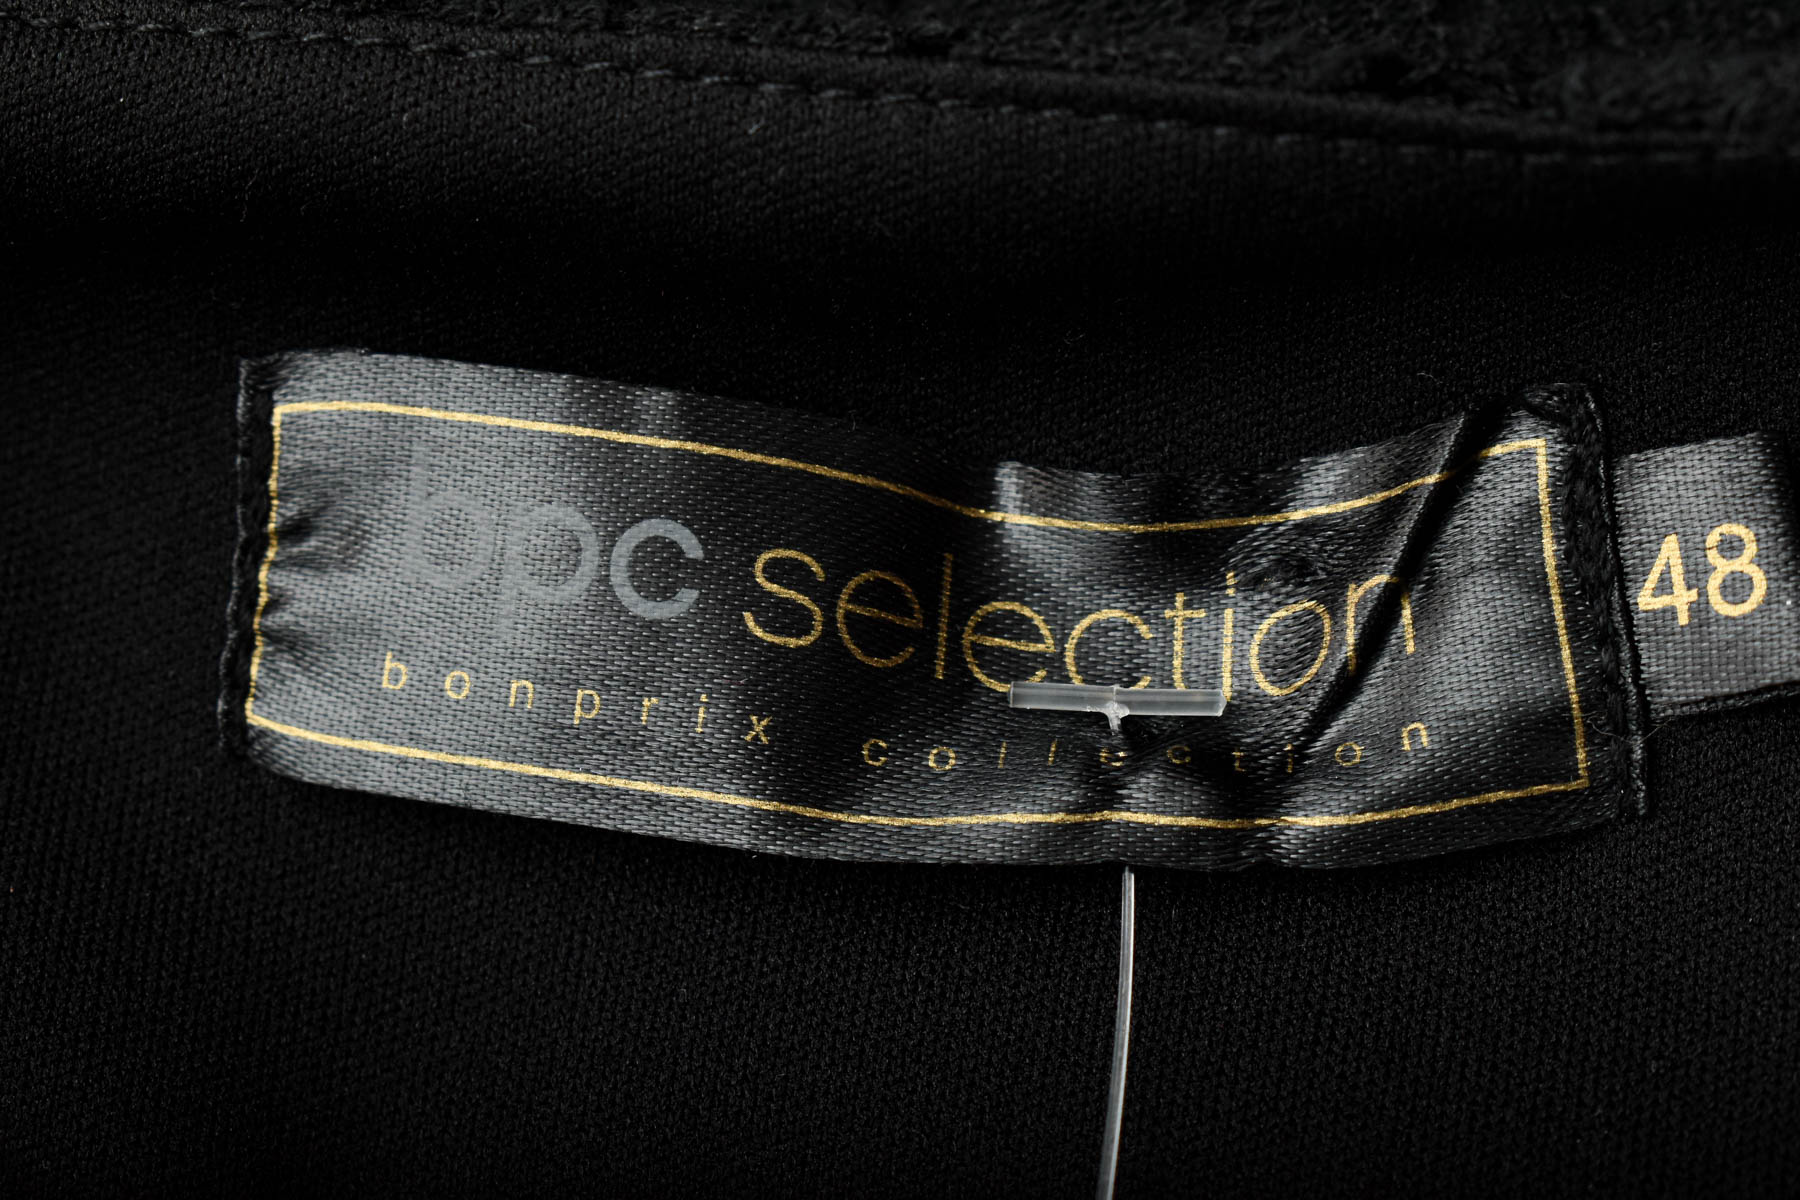 Γυναικείо πουκάμισο - Bpc selection bonprix collection - 2